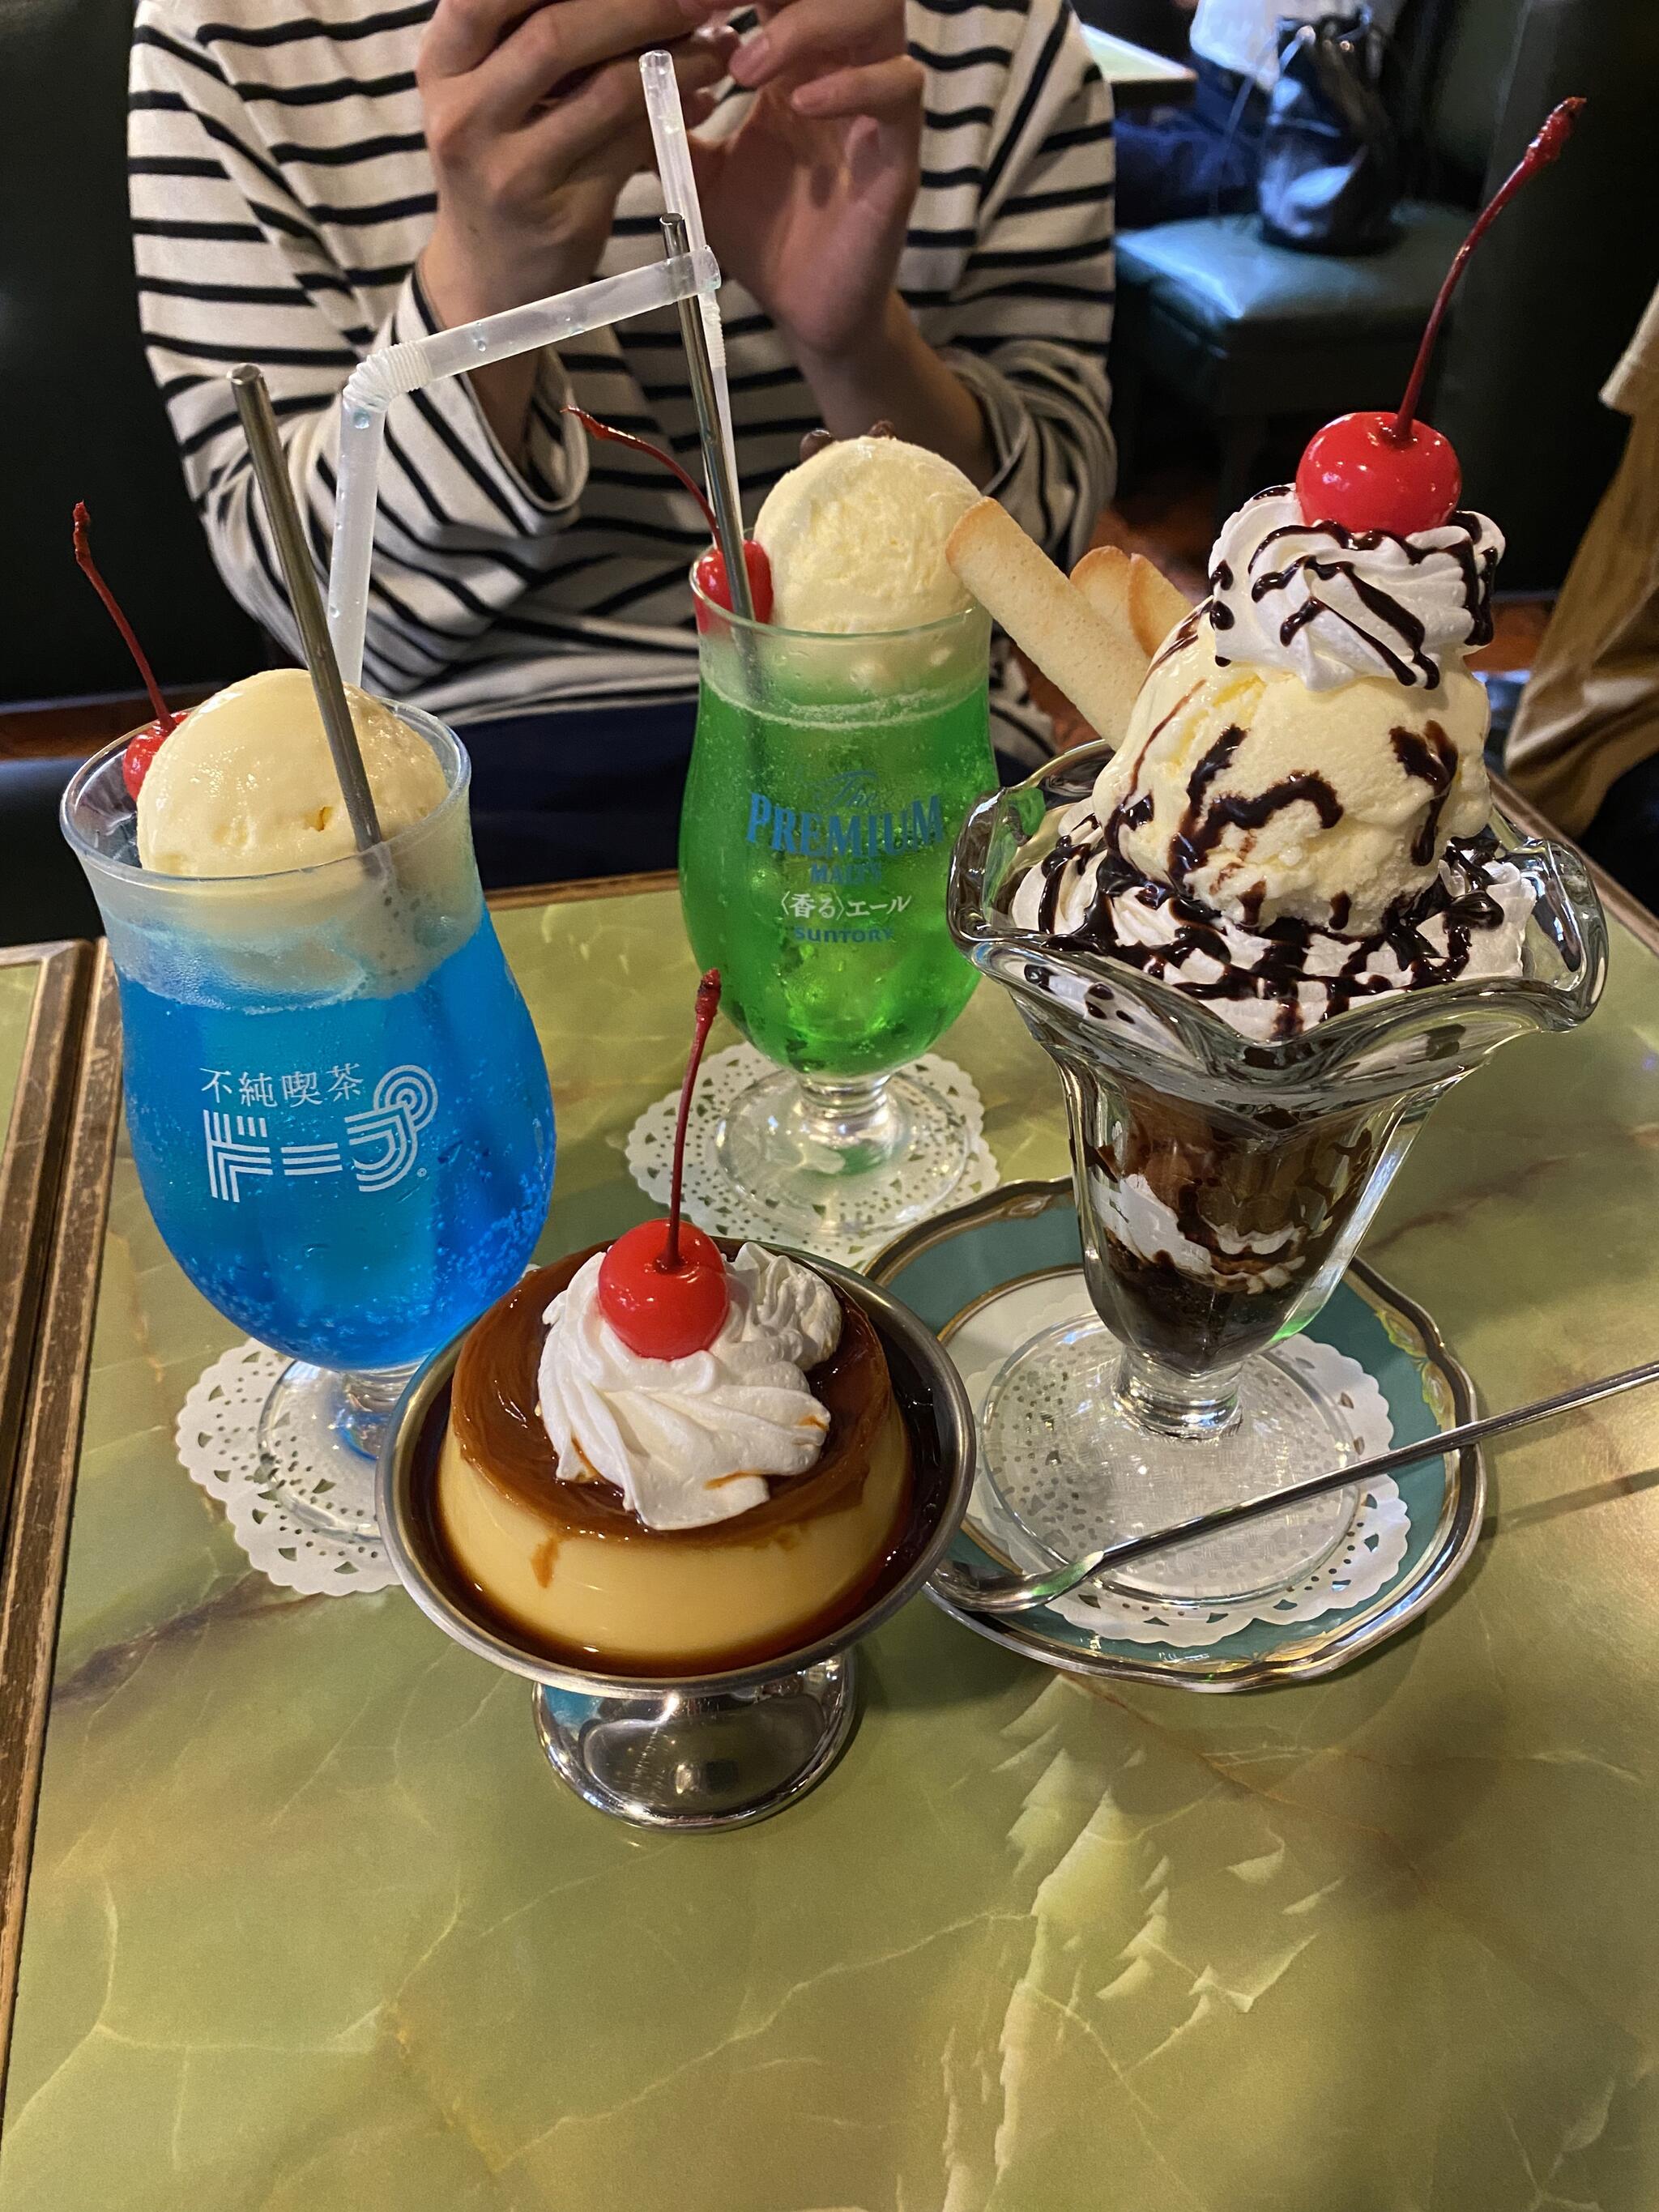 不純喫茶 ドープ 上野御徒町店 - 台東区上野/カフェ・喫茶 | Yahoo!マップ